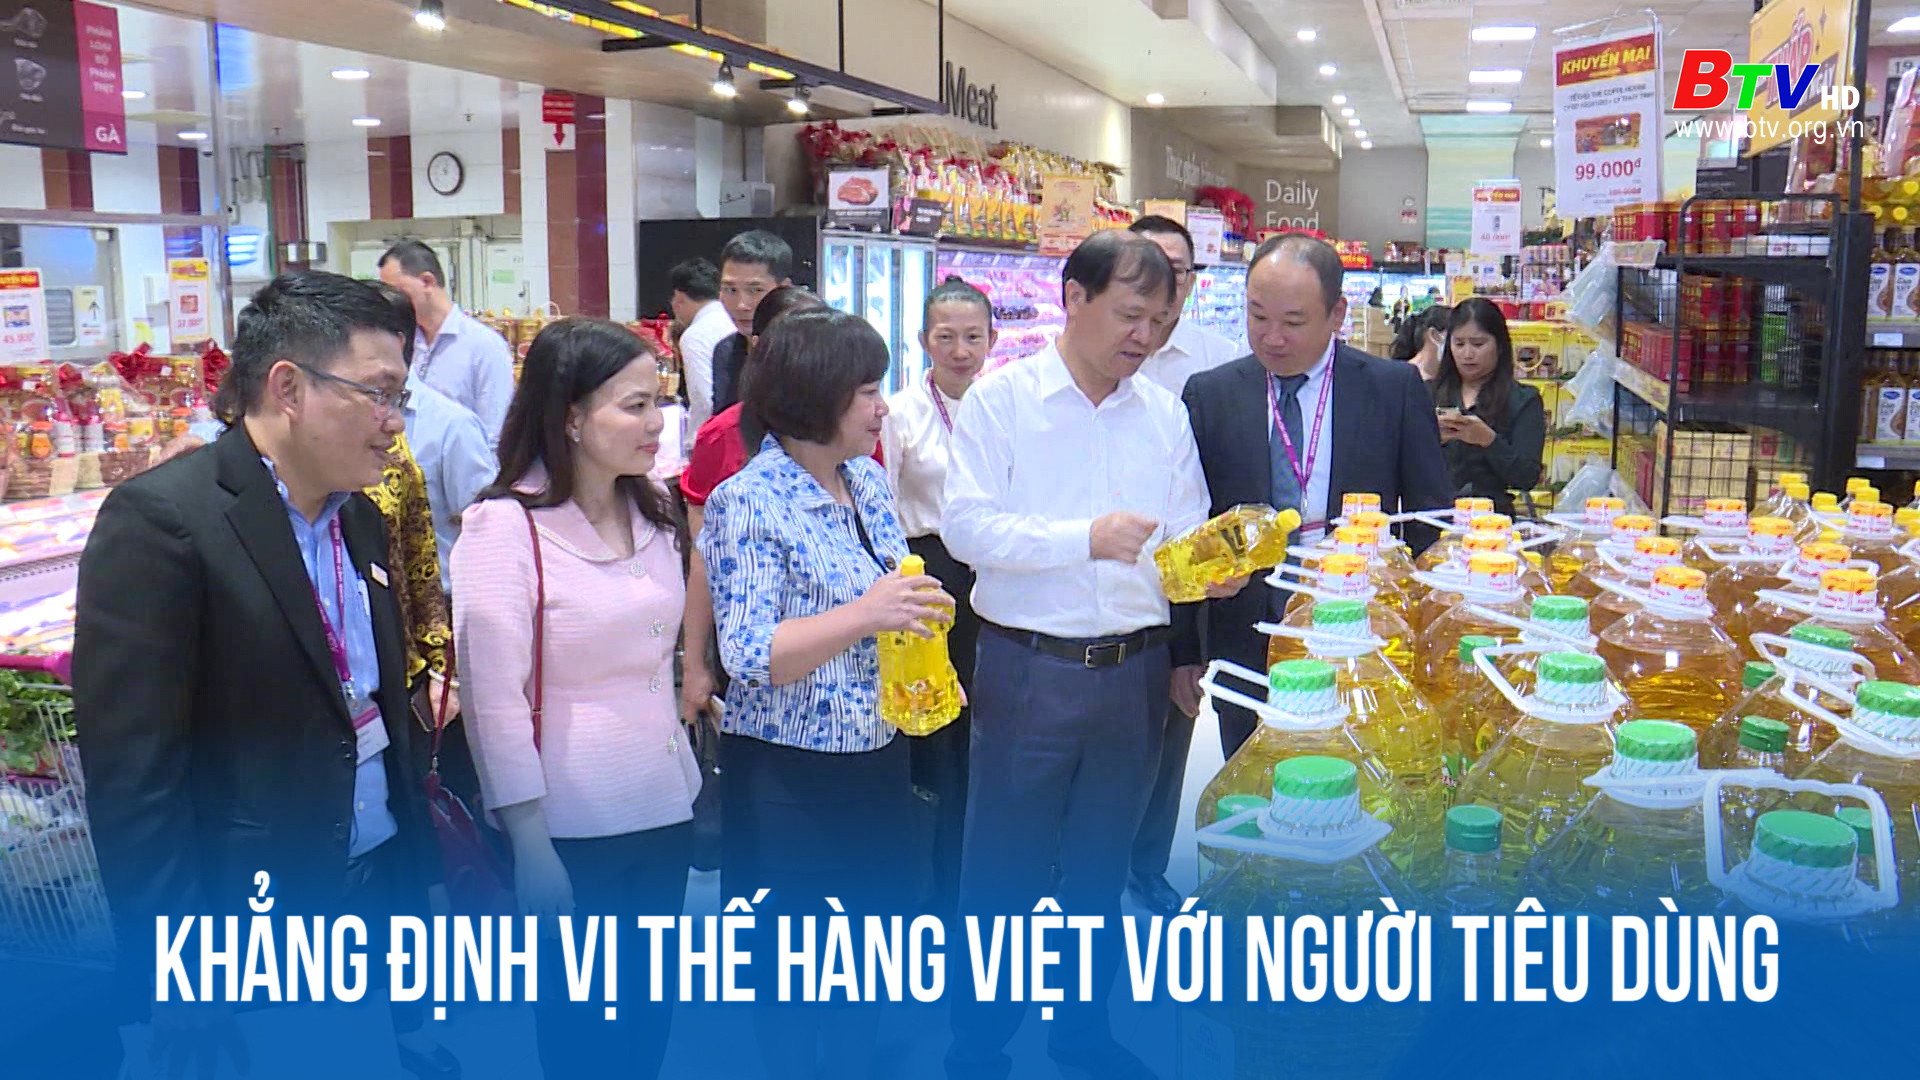 Khẳng định vị thế hàng Việt với người tiêu dùng